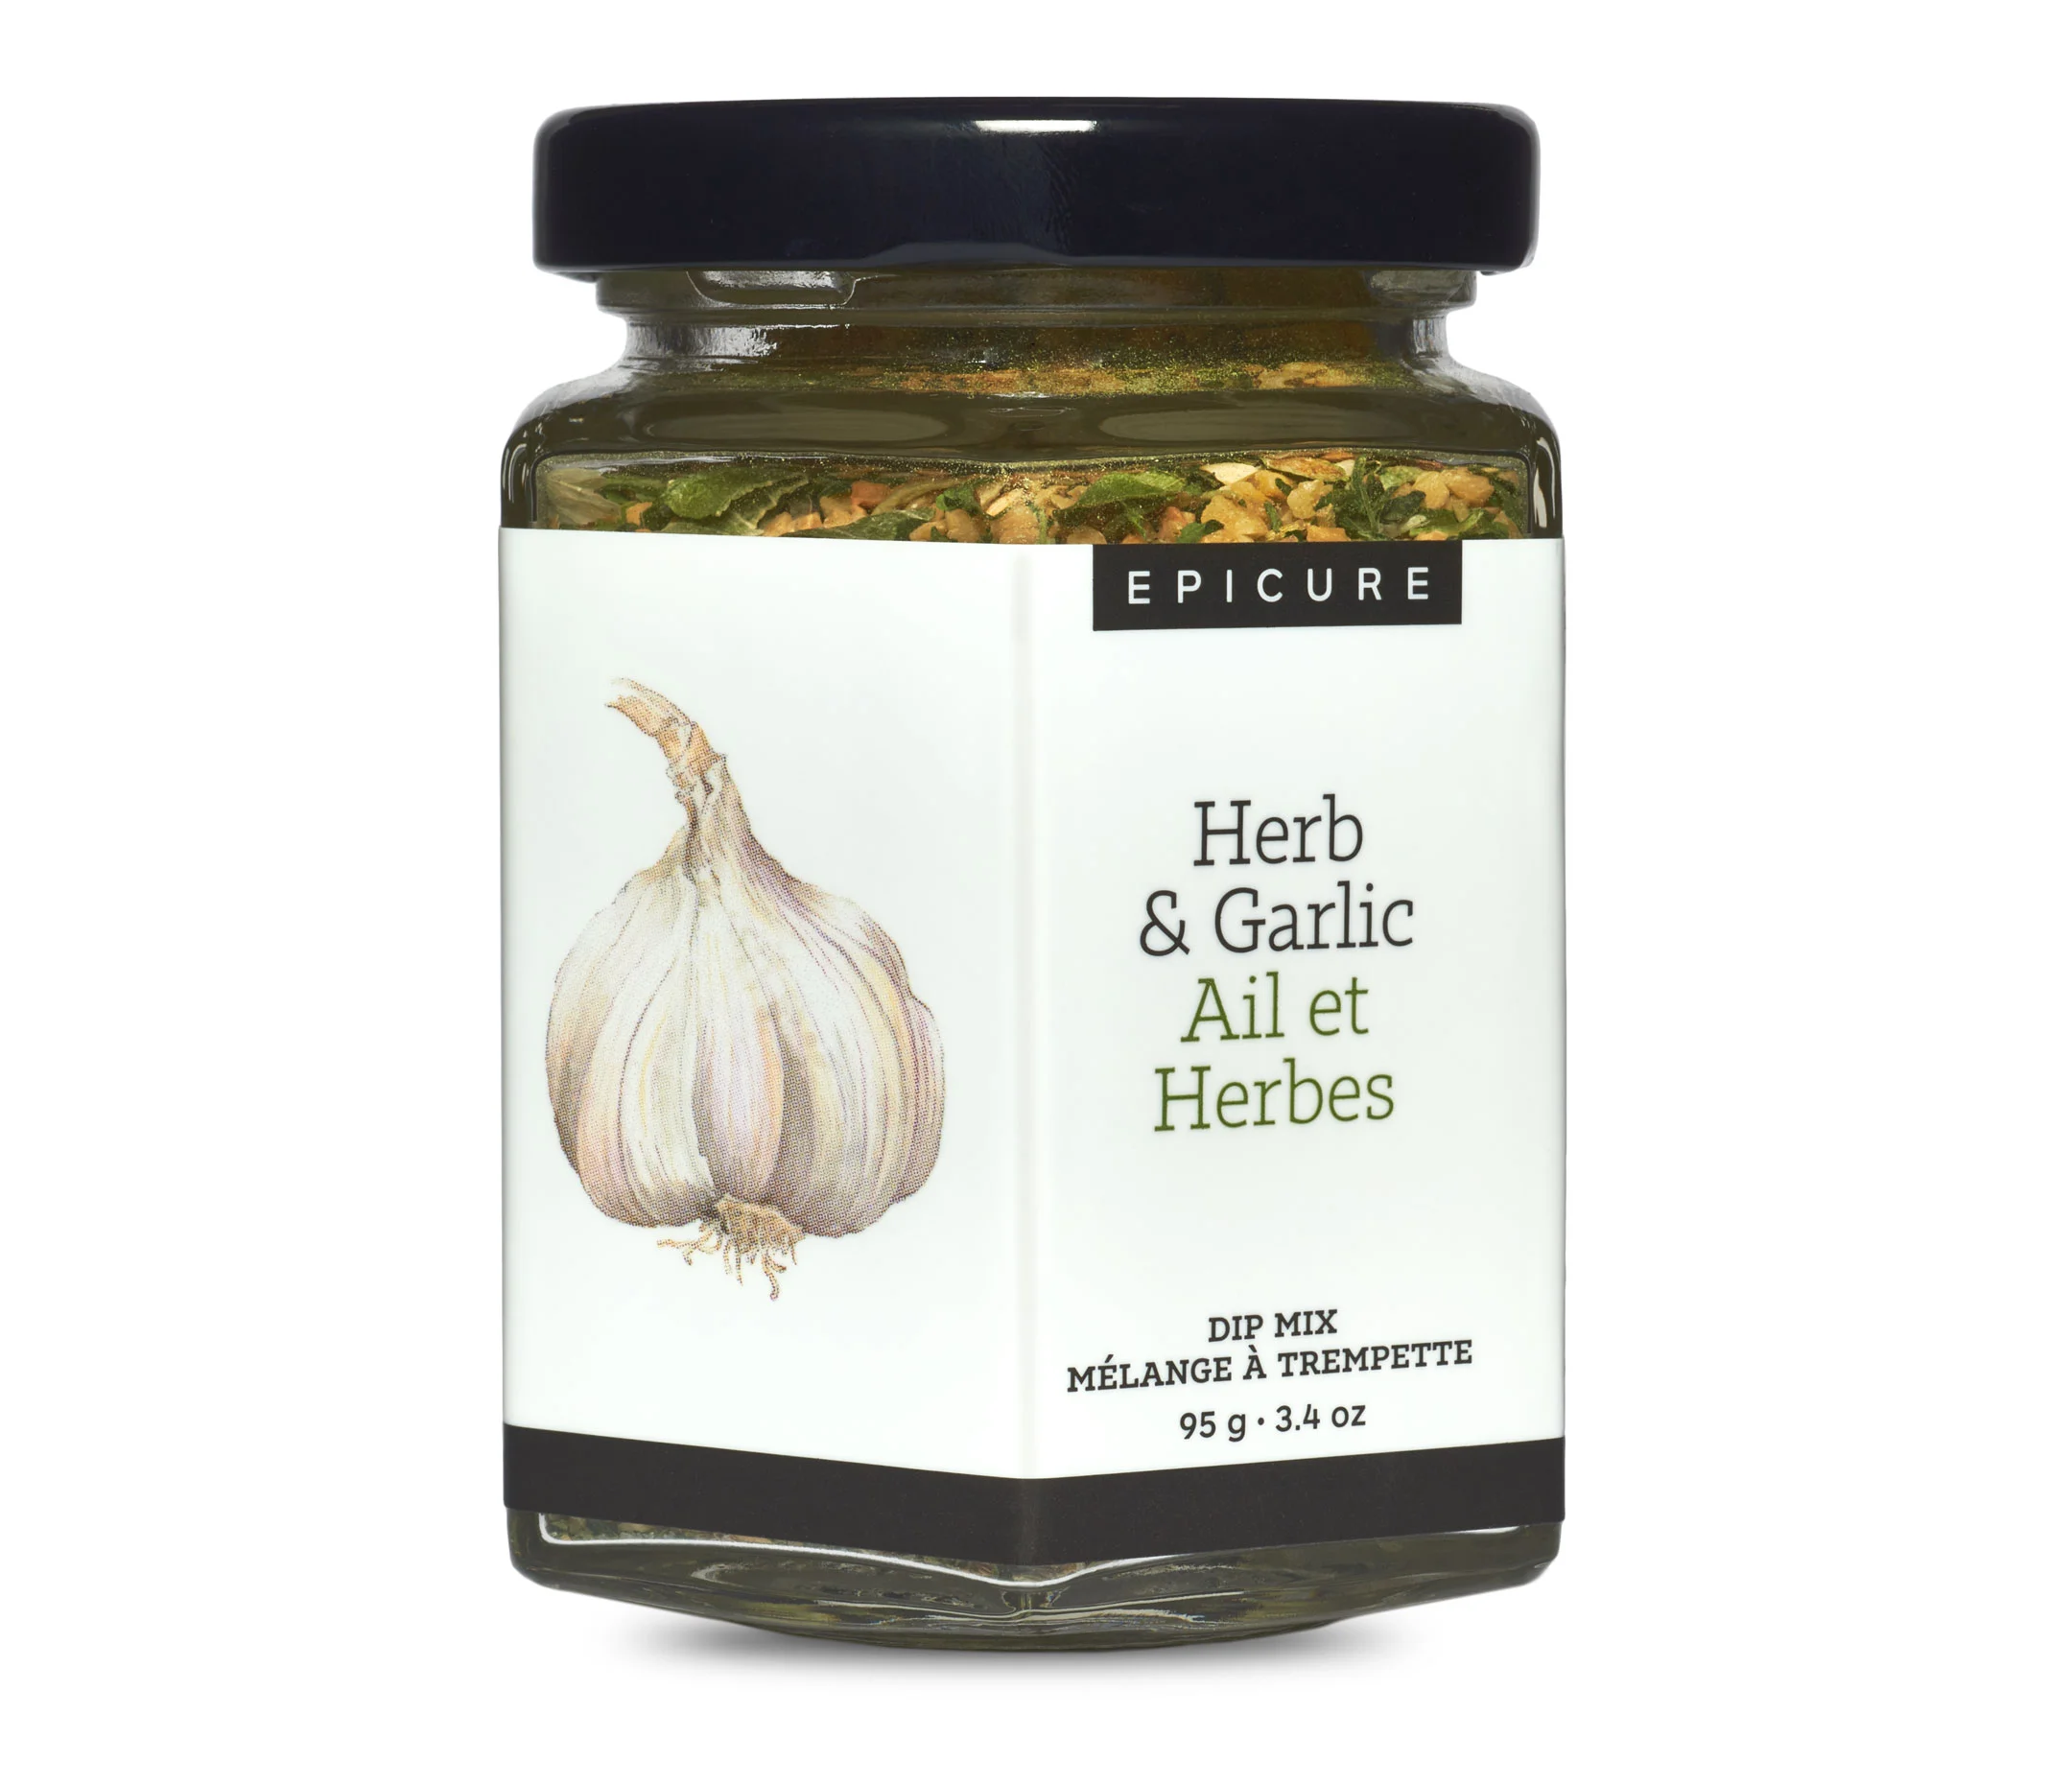 Herb & Garlic Dip Mix